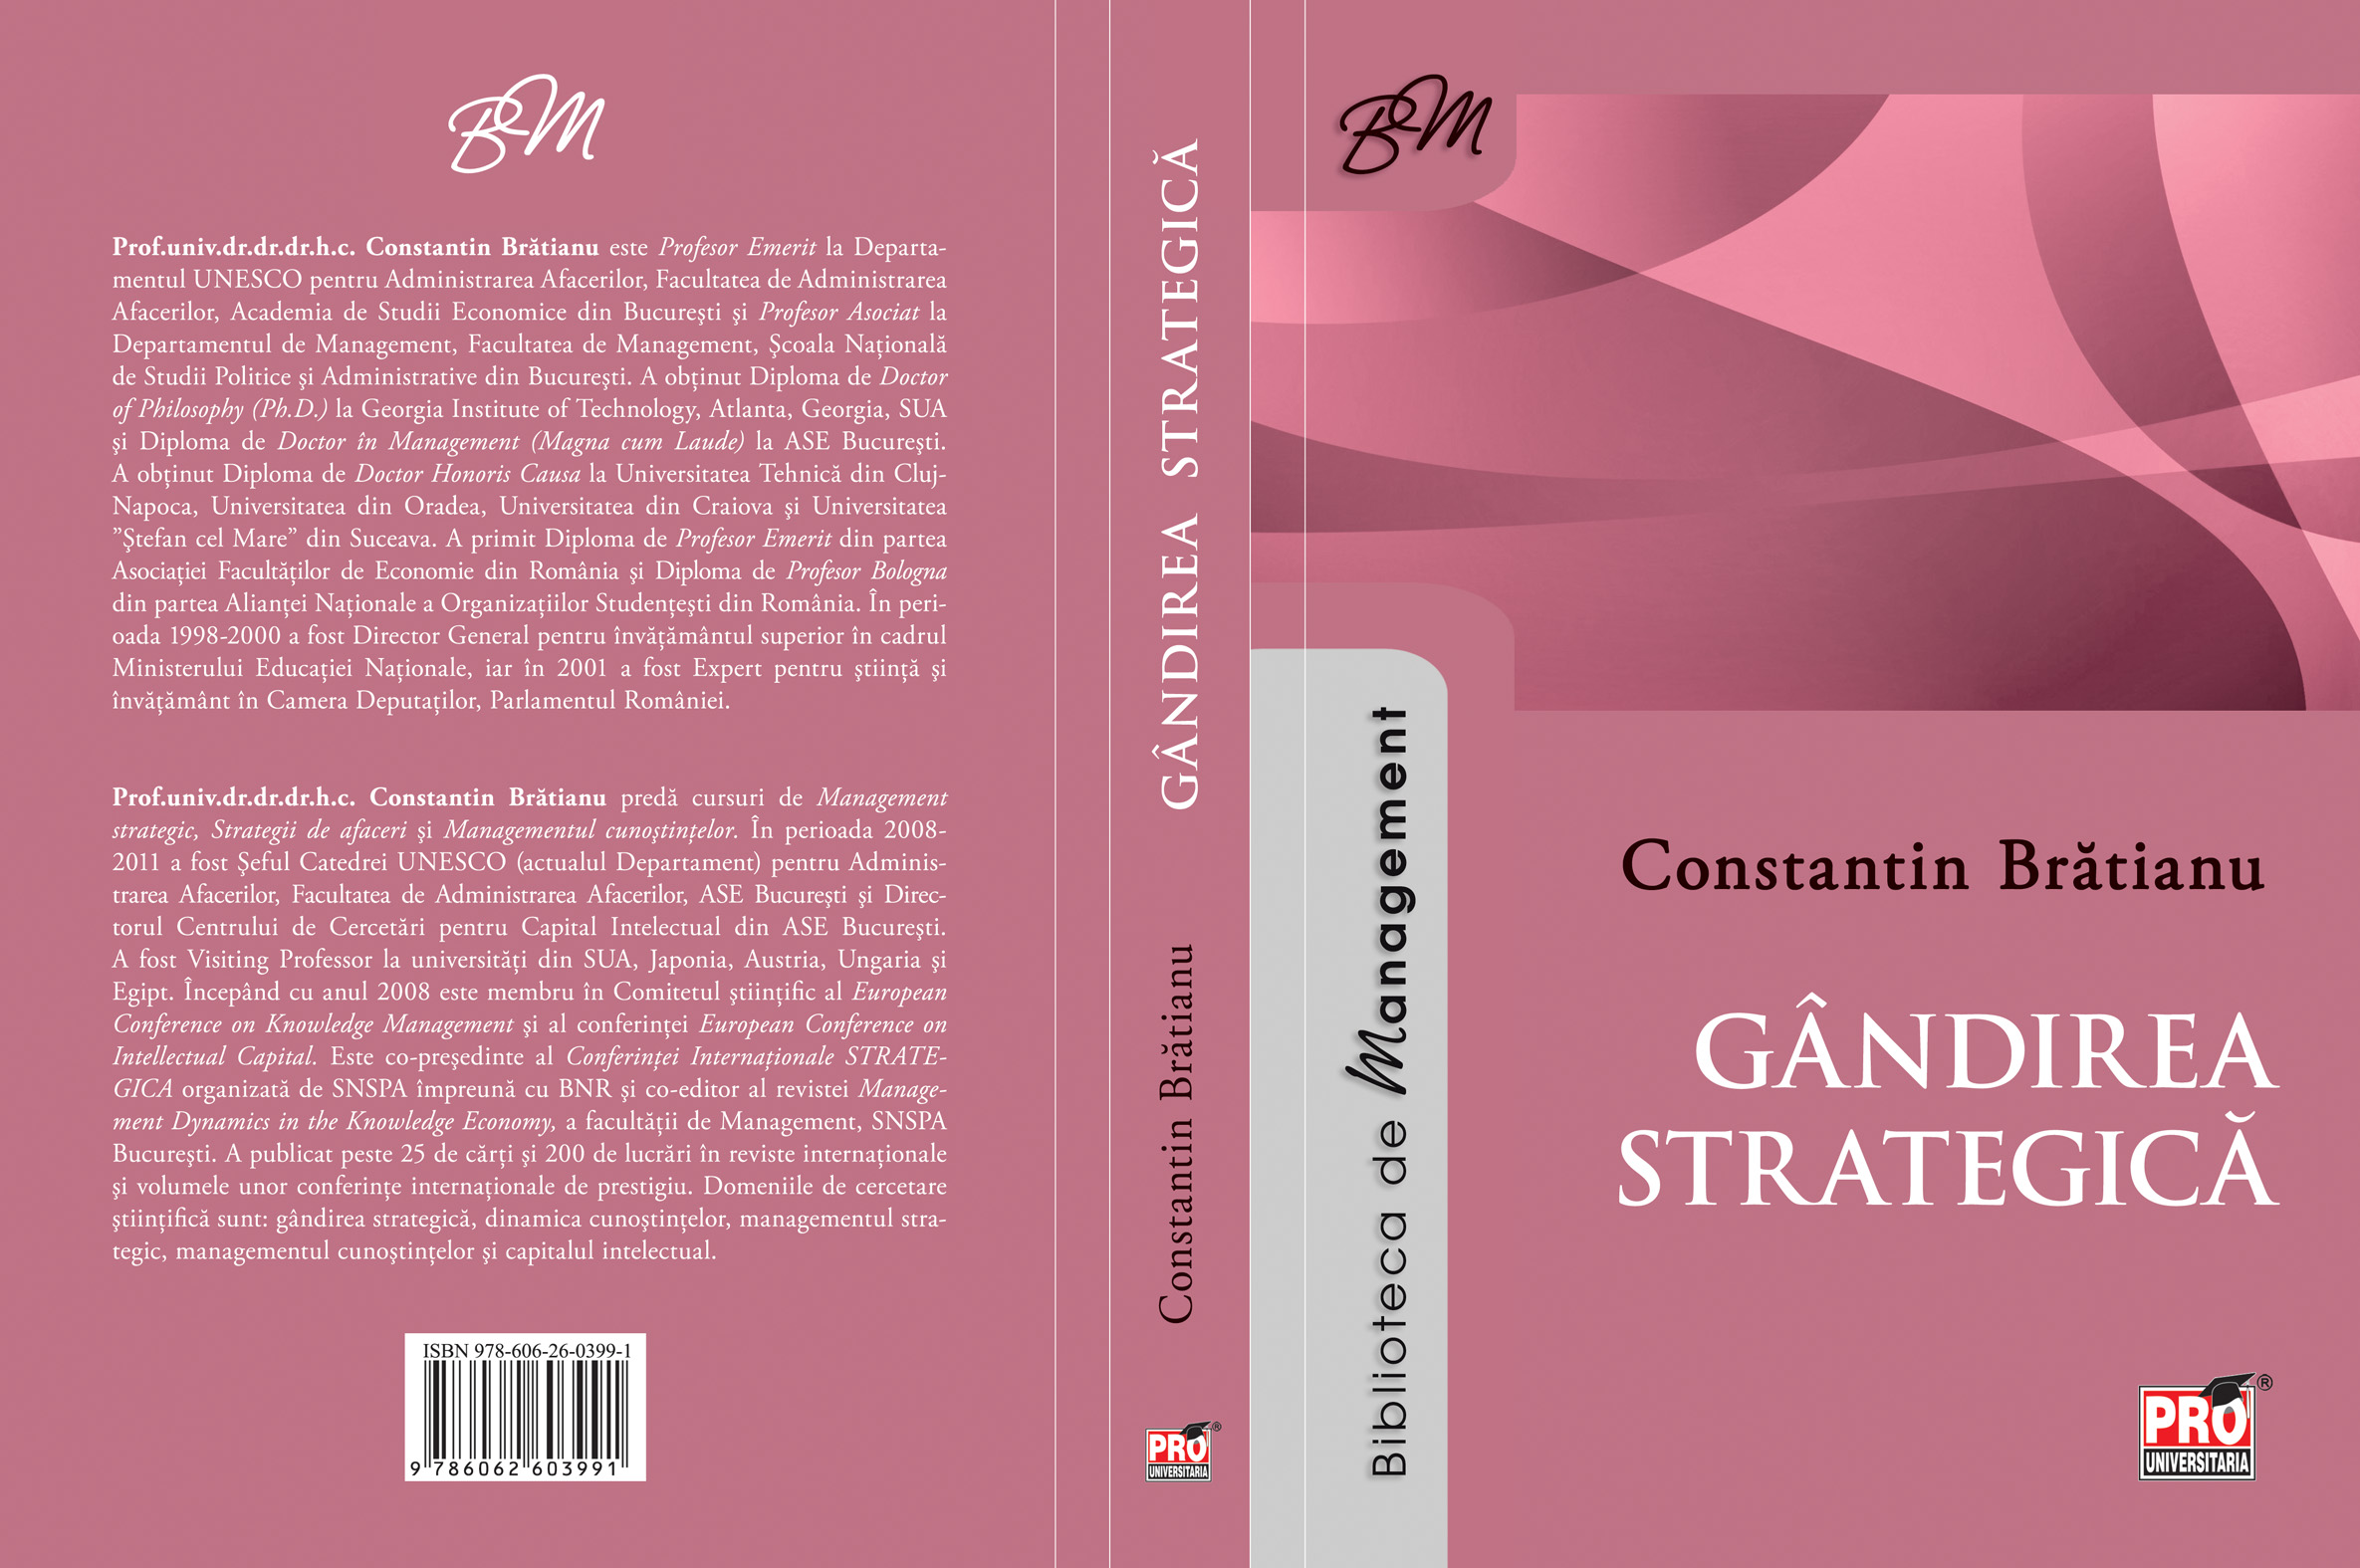 Gandirea strategica - Constantin Bratianu